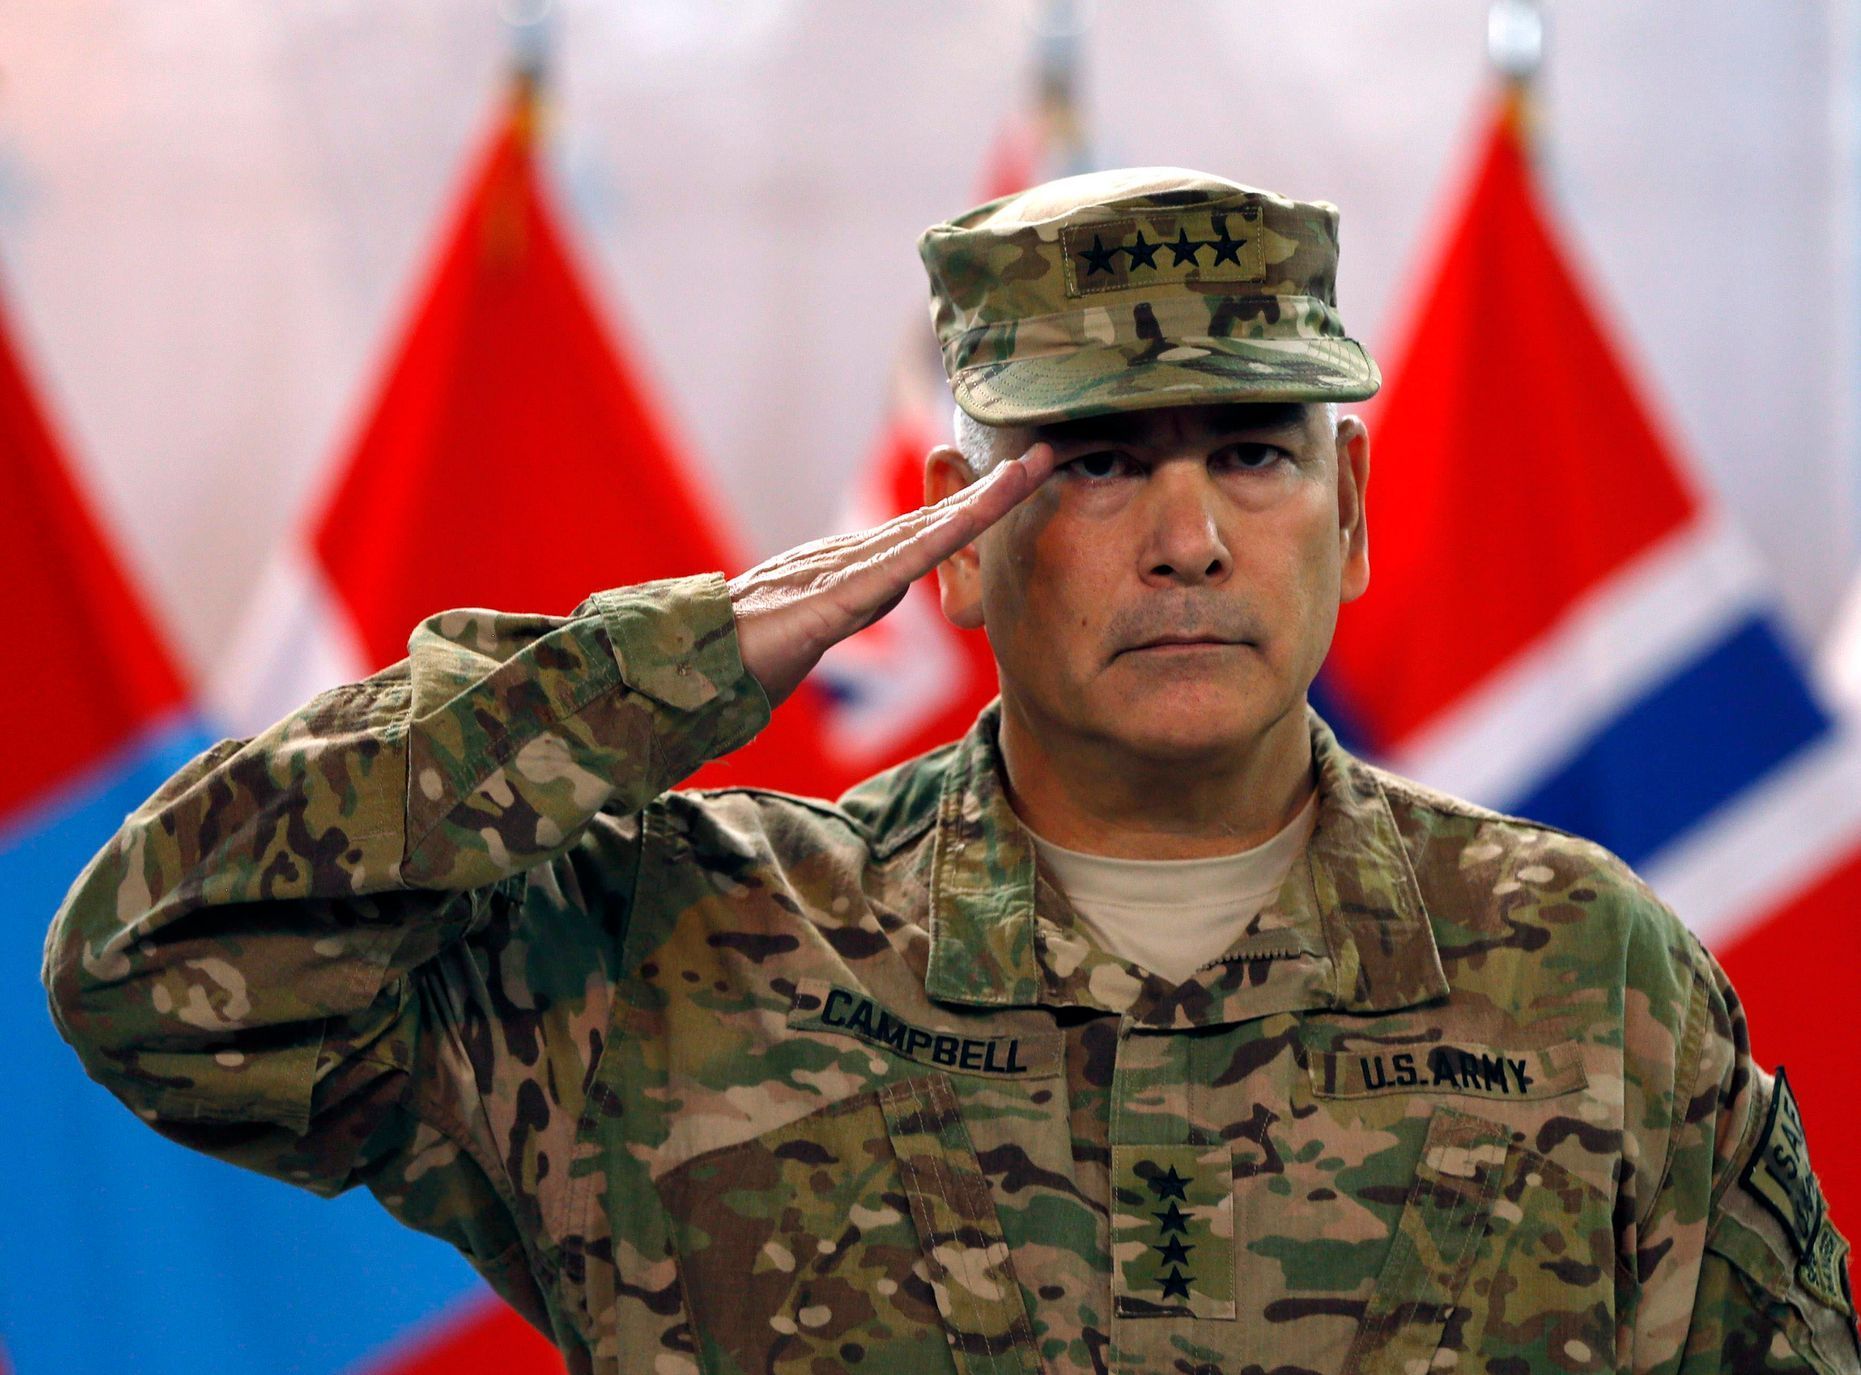 Generál John Campbell, Kábul, 28. prosince 2014